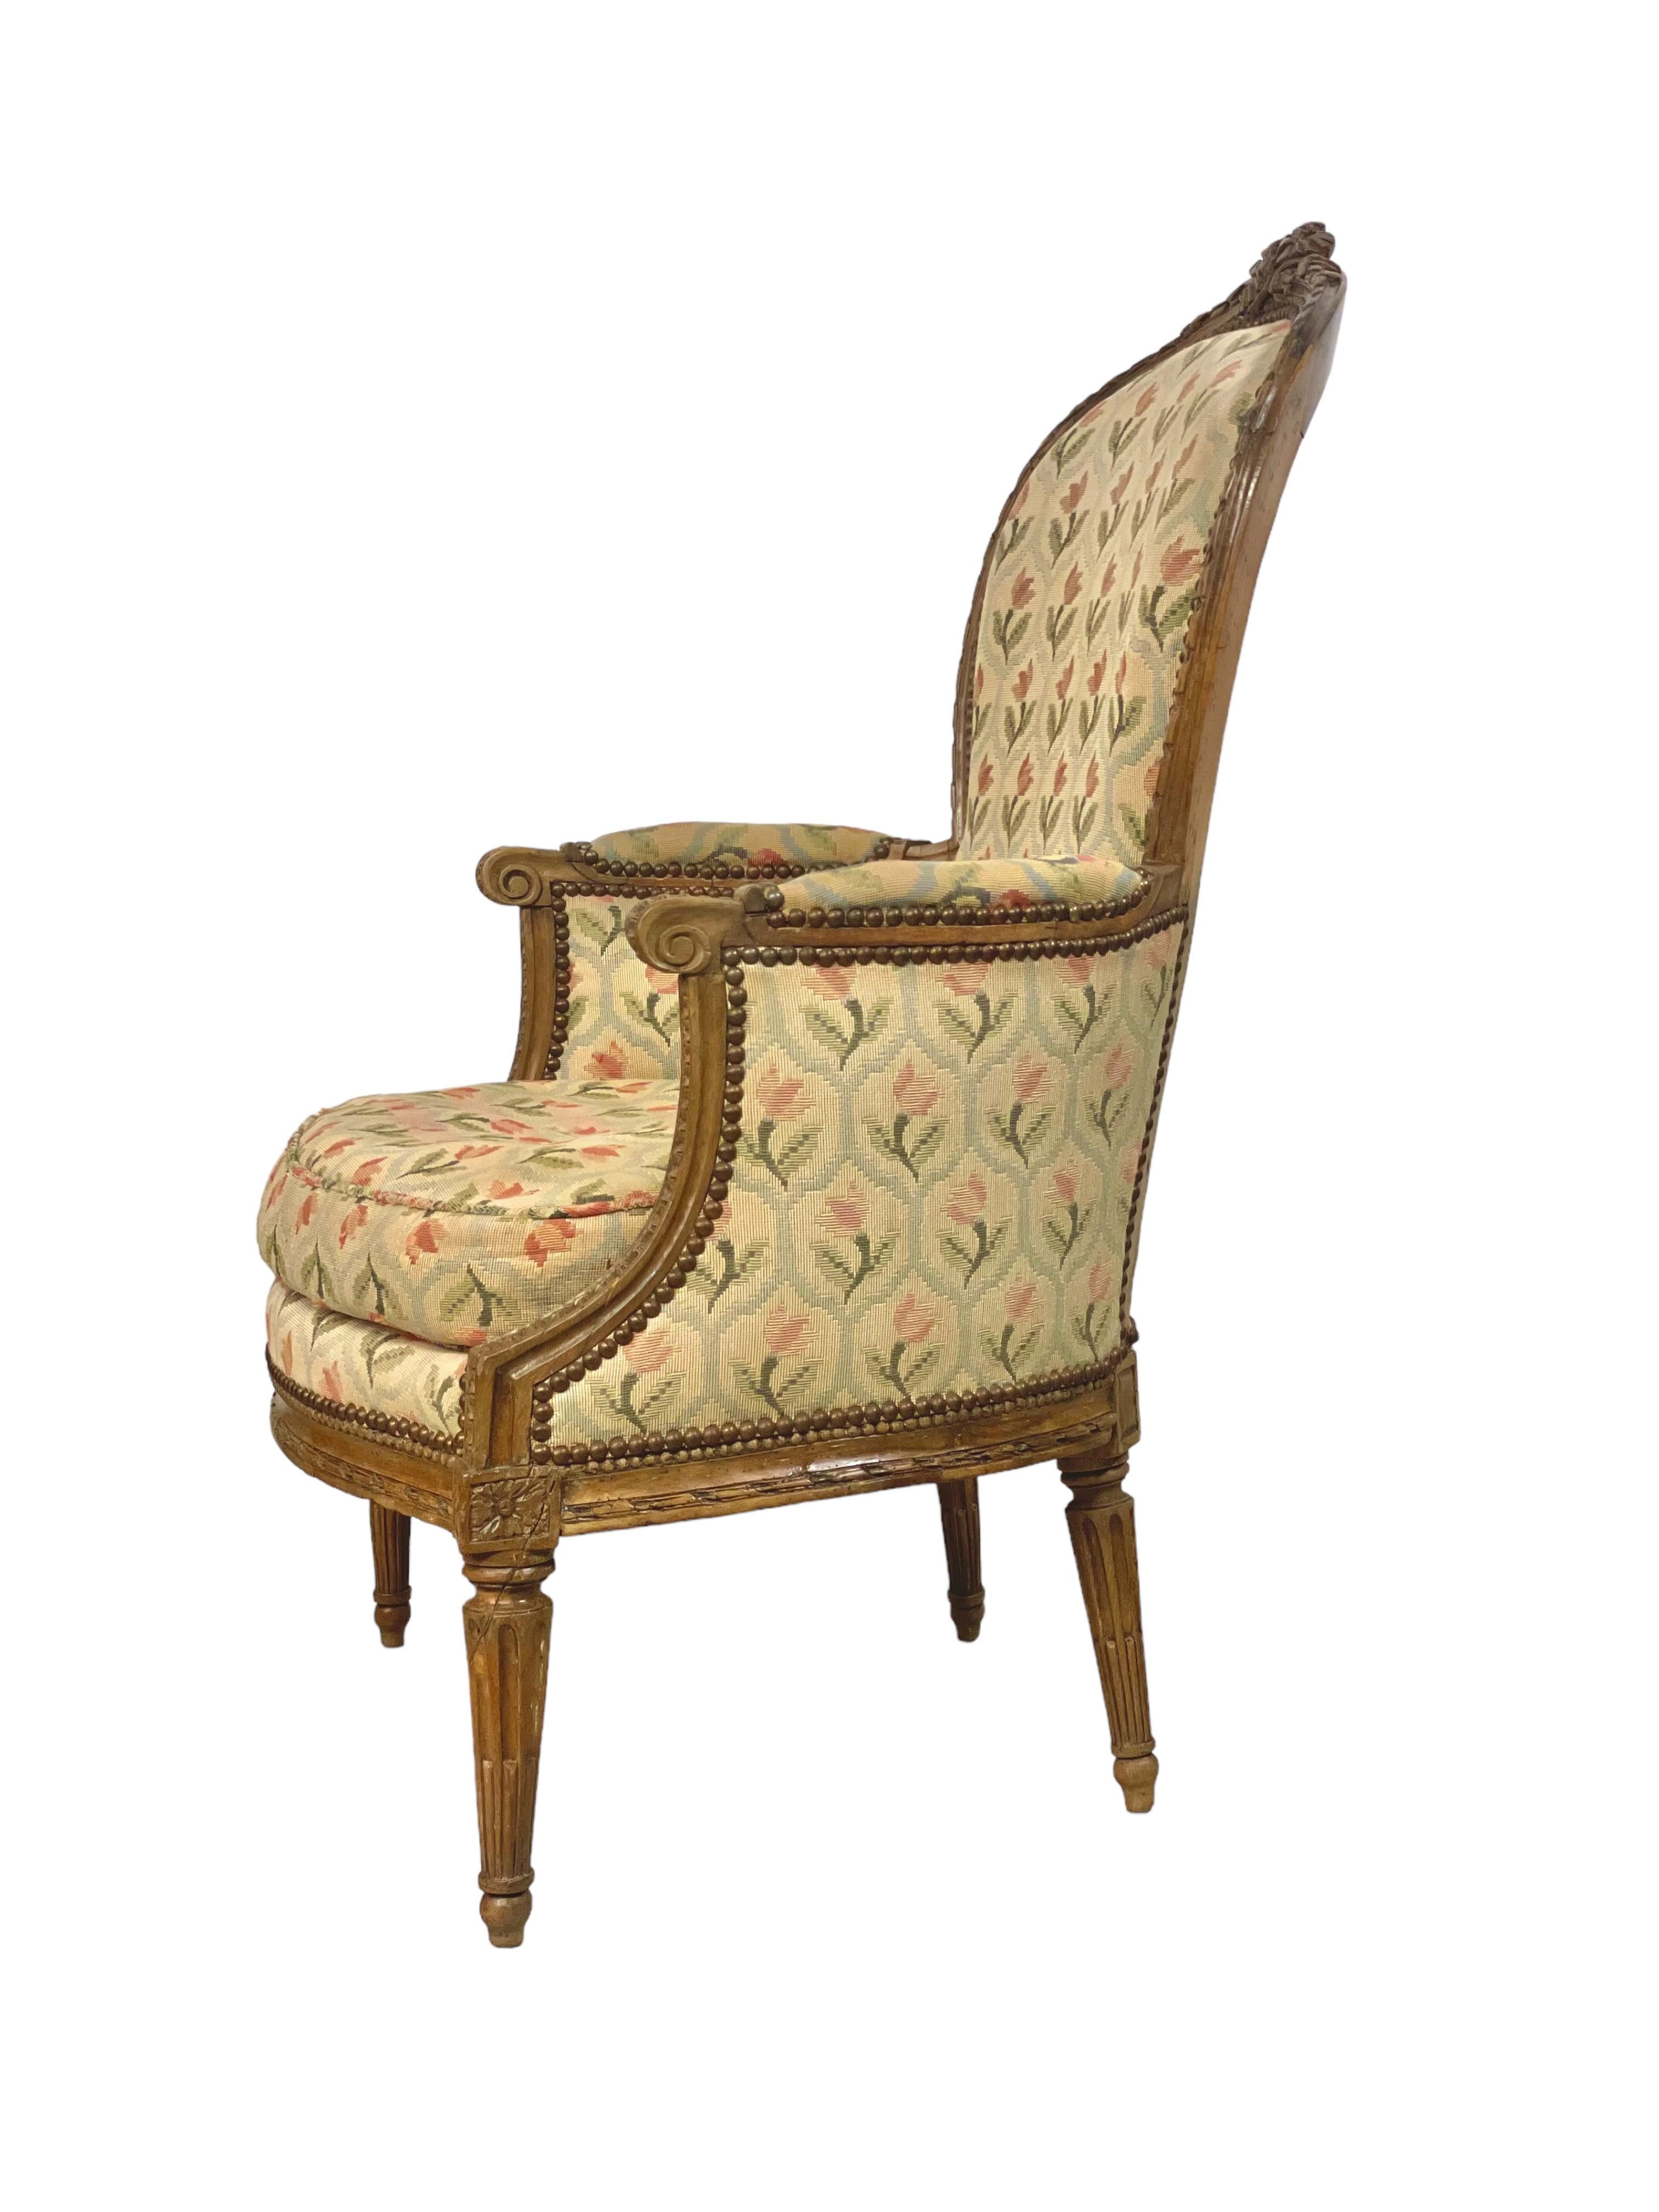 Ce fauteuil Bergère Louis XVI très décoratif est magnifiquement travaillé en chêne et date du 18ème siècle. Elegant et confortable, il a été sculpté à la main de manière exquise, avec des détails exceptionnels. Le dossier médaillon légèrement